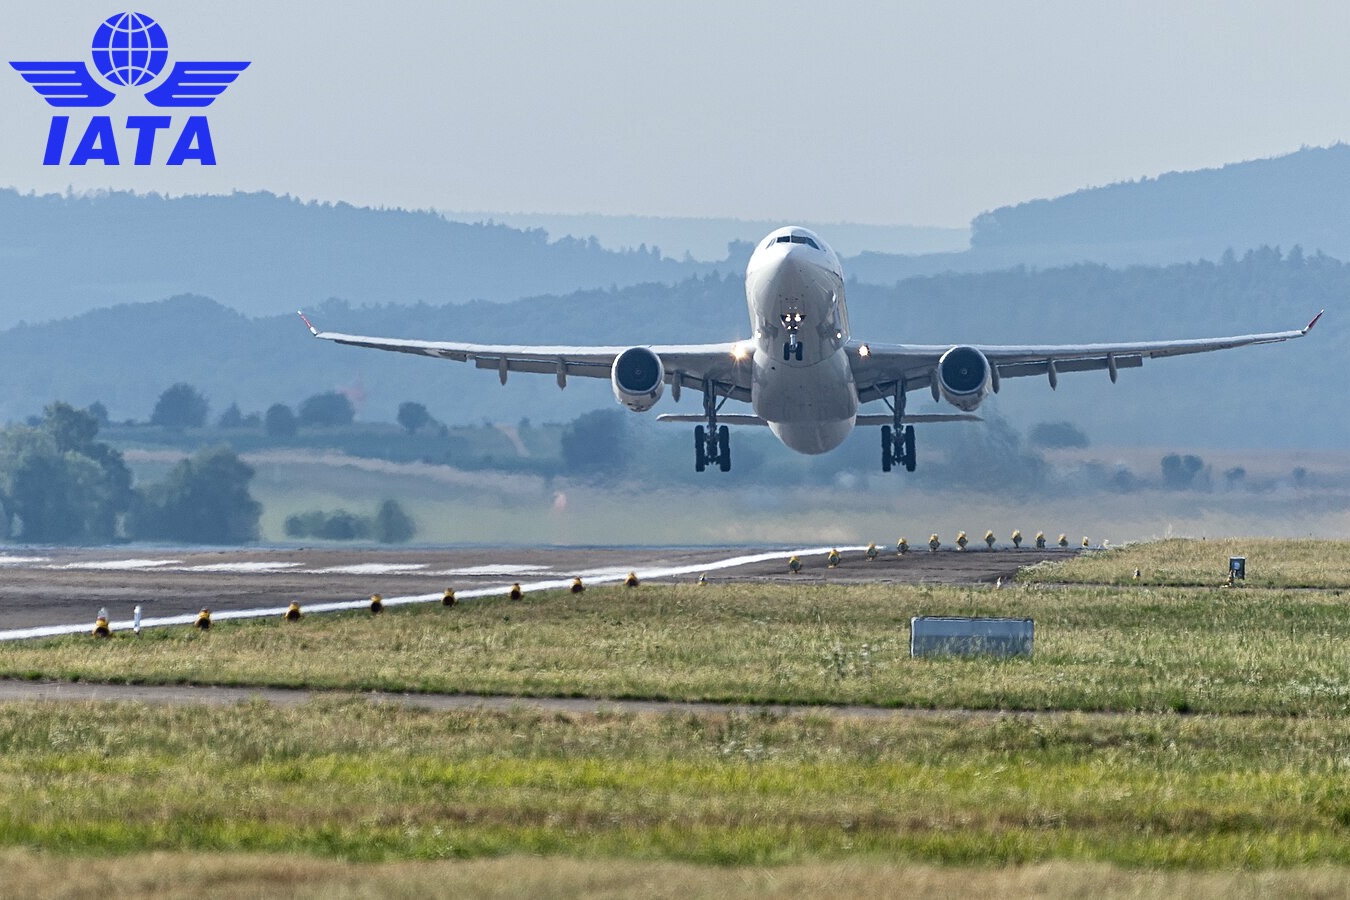 A formação da IATA - International Air Transport Association